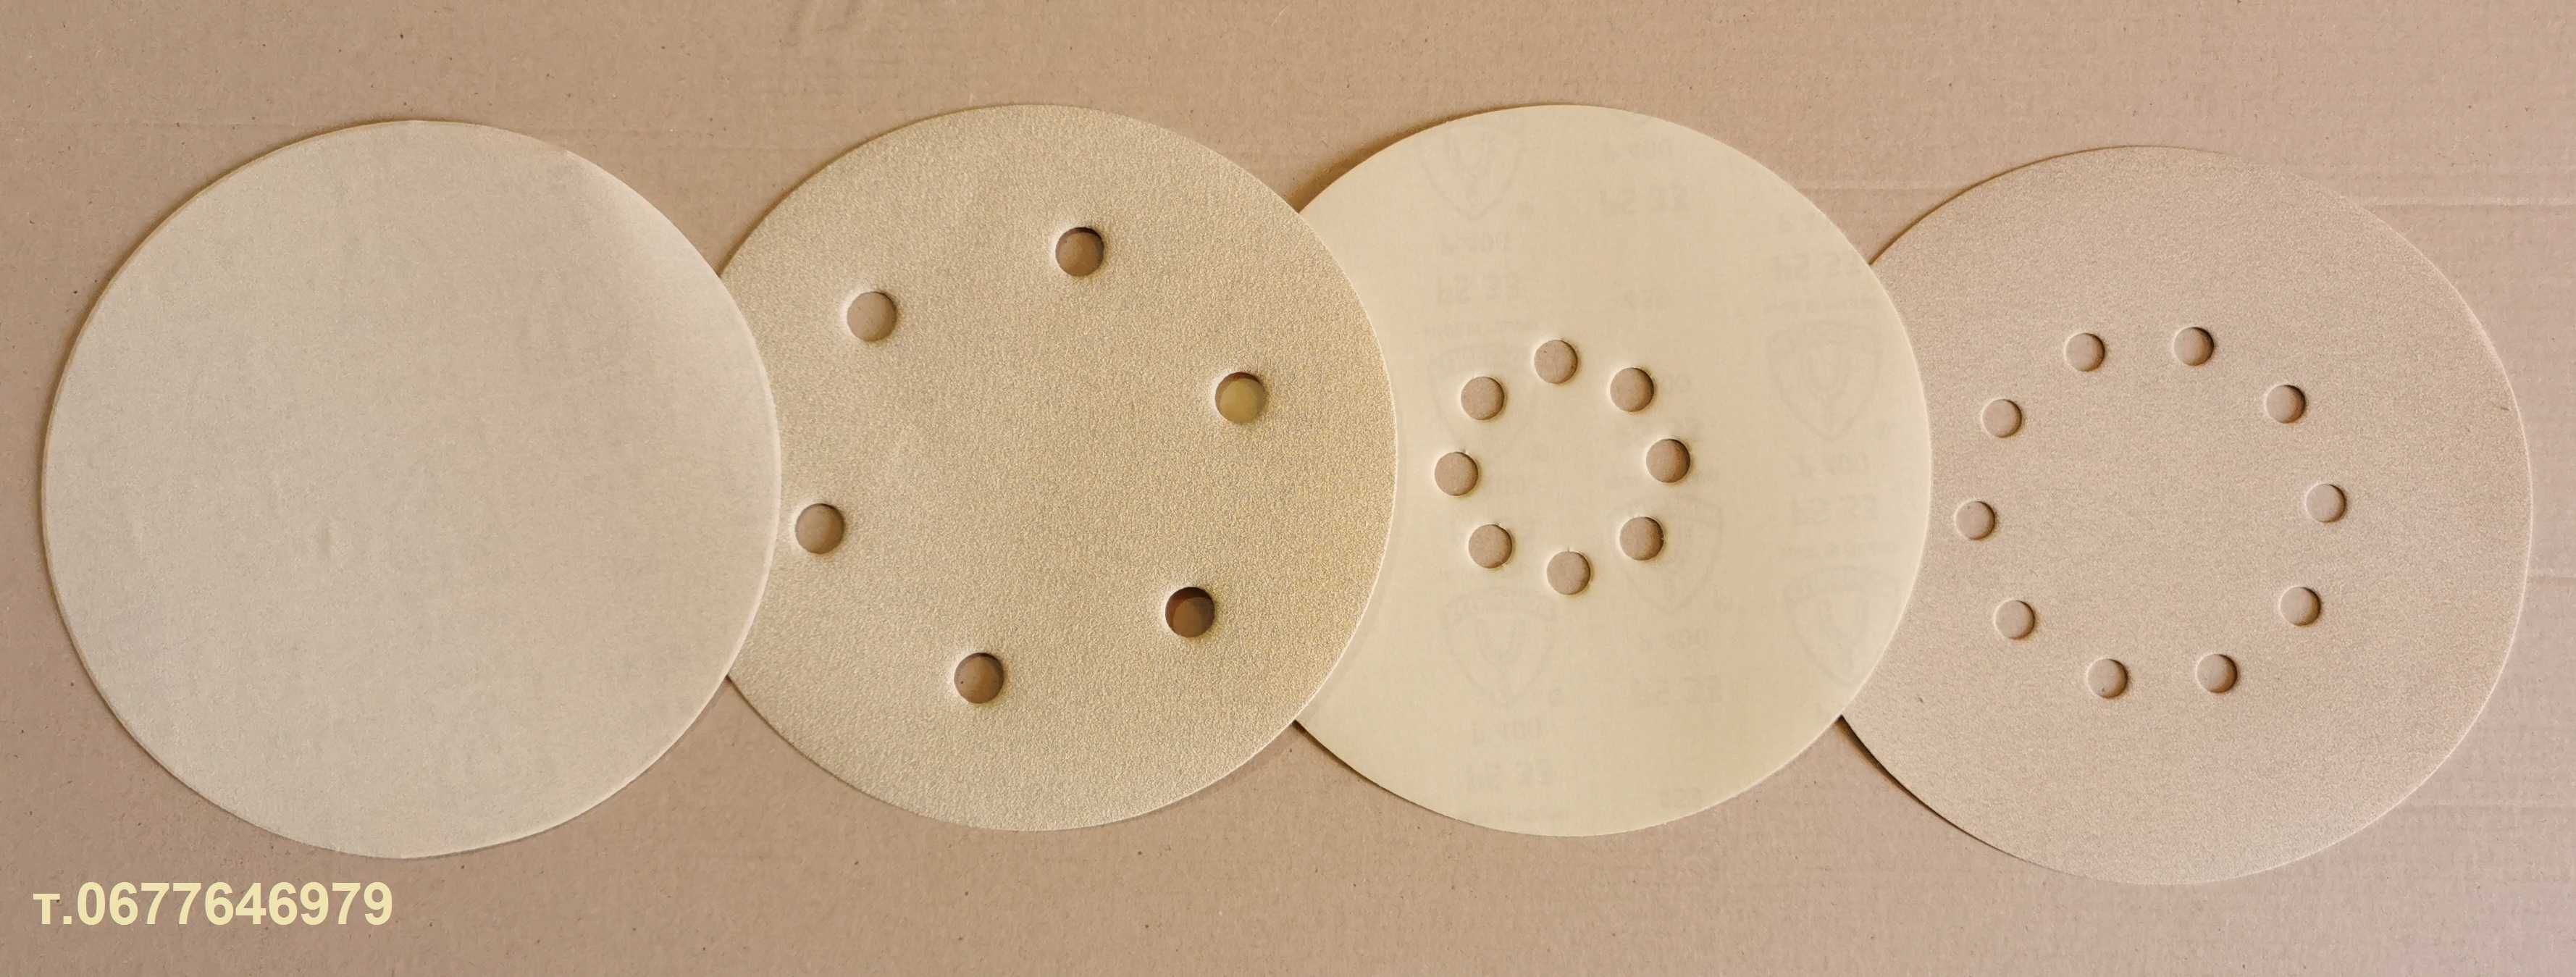 Шлифовальные круги диаметр 225 мм. для Жирафа шлифовка стен и потолка